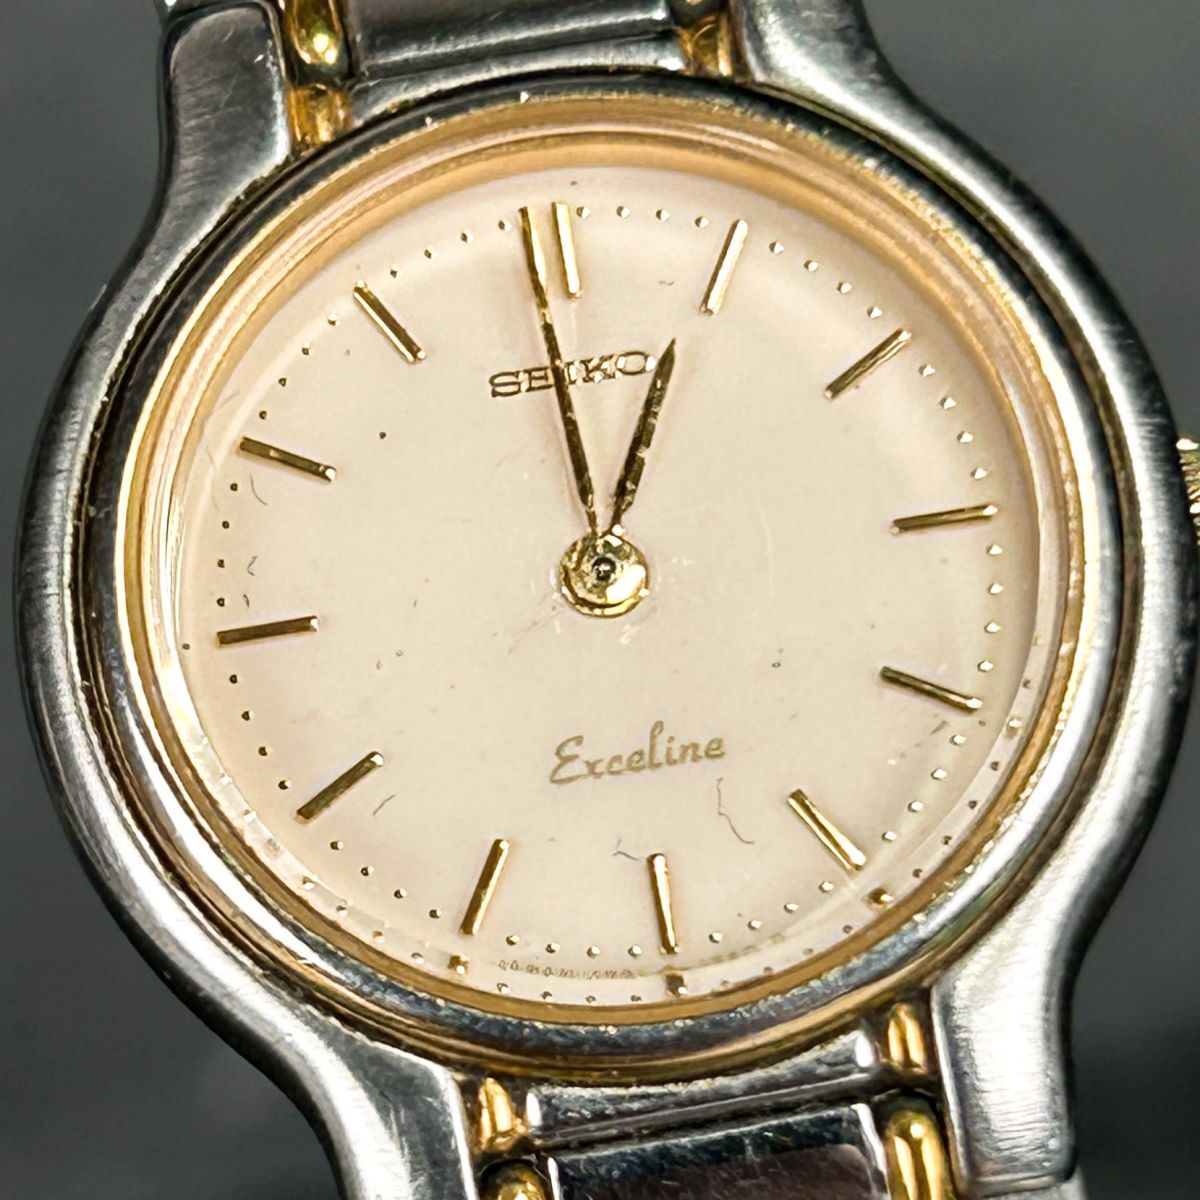 1970 годы производства SEIKO Seiko Exceline Exceline 1221-0180 наручные часы кварц аналог комбинированный цвет черепаха дверь производства нержавеющая сталь раунд 